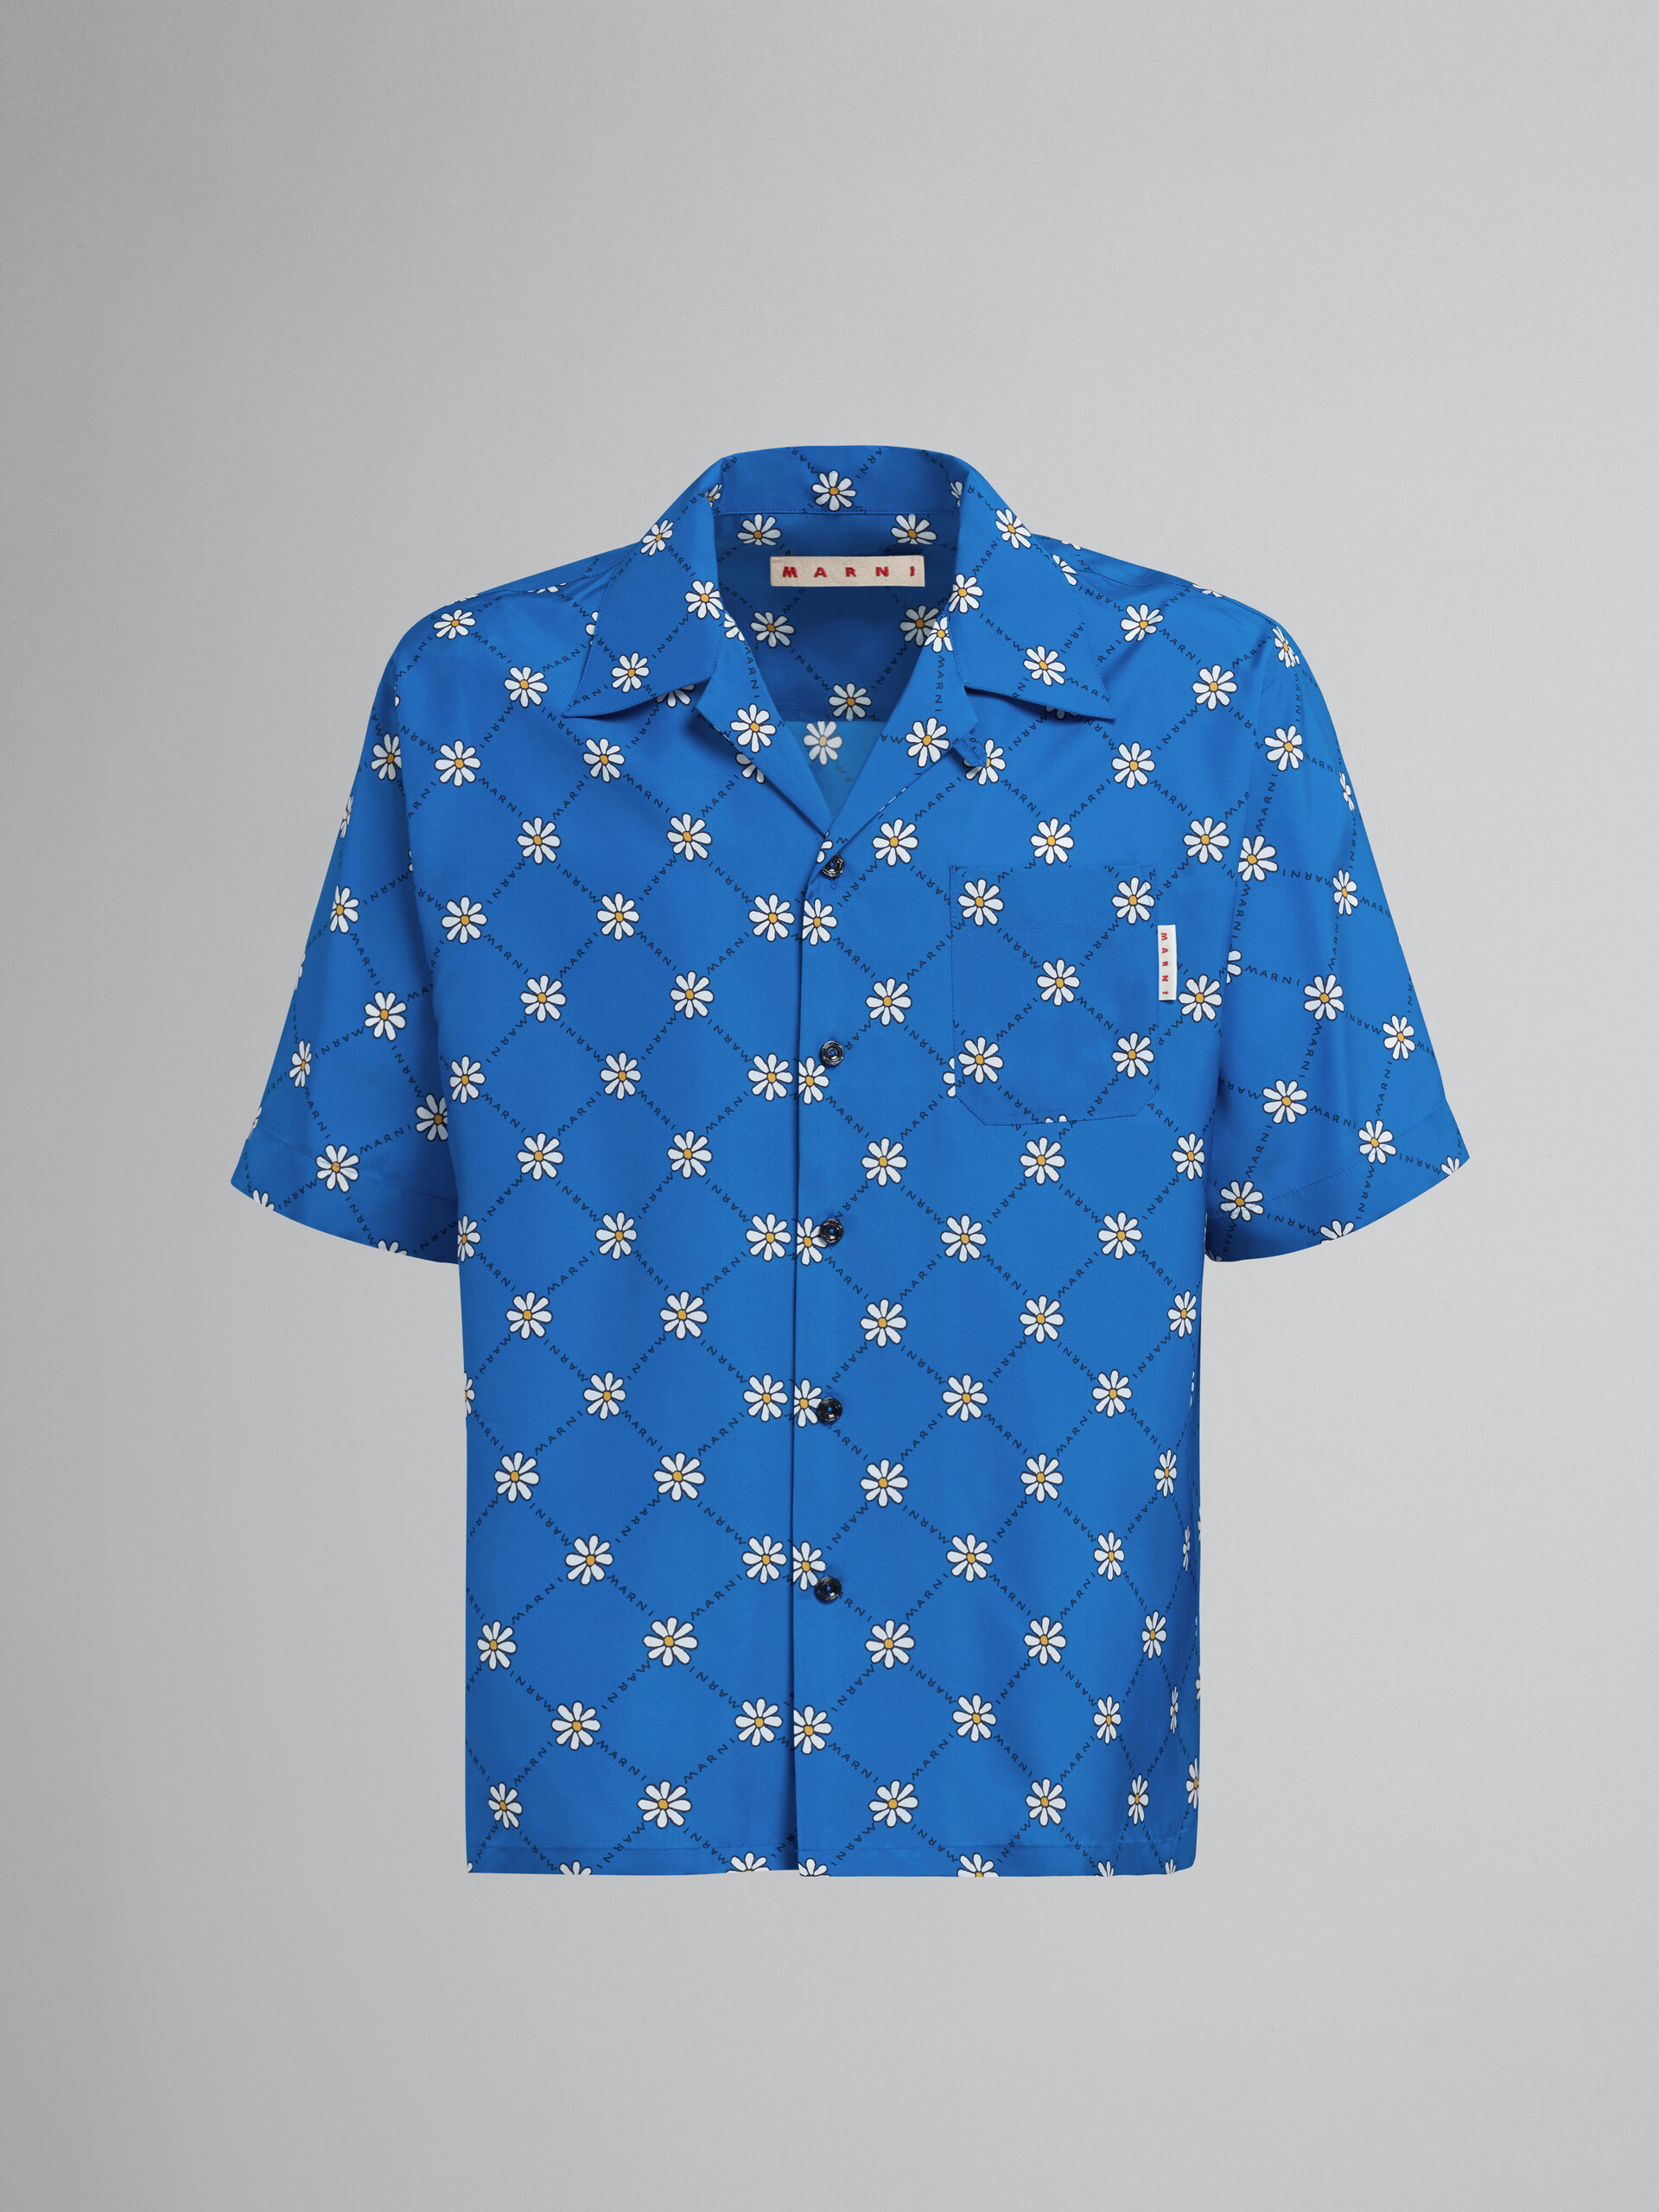 Marnigram print blue viscose toile bowling shirt - Shirts - Image 1